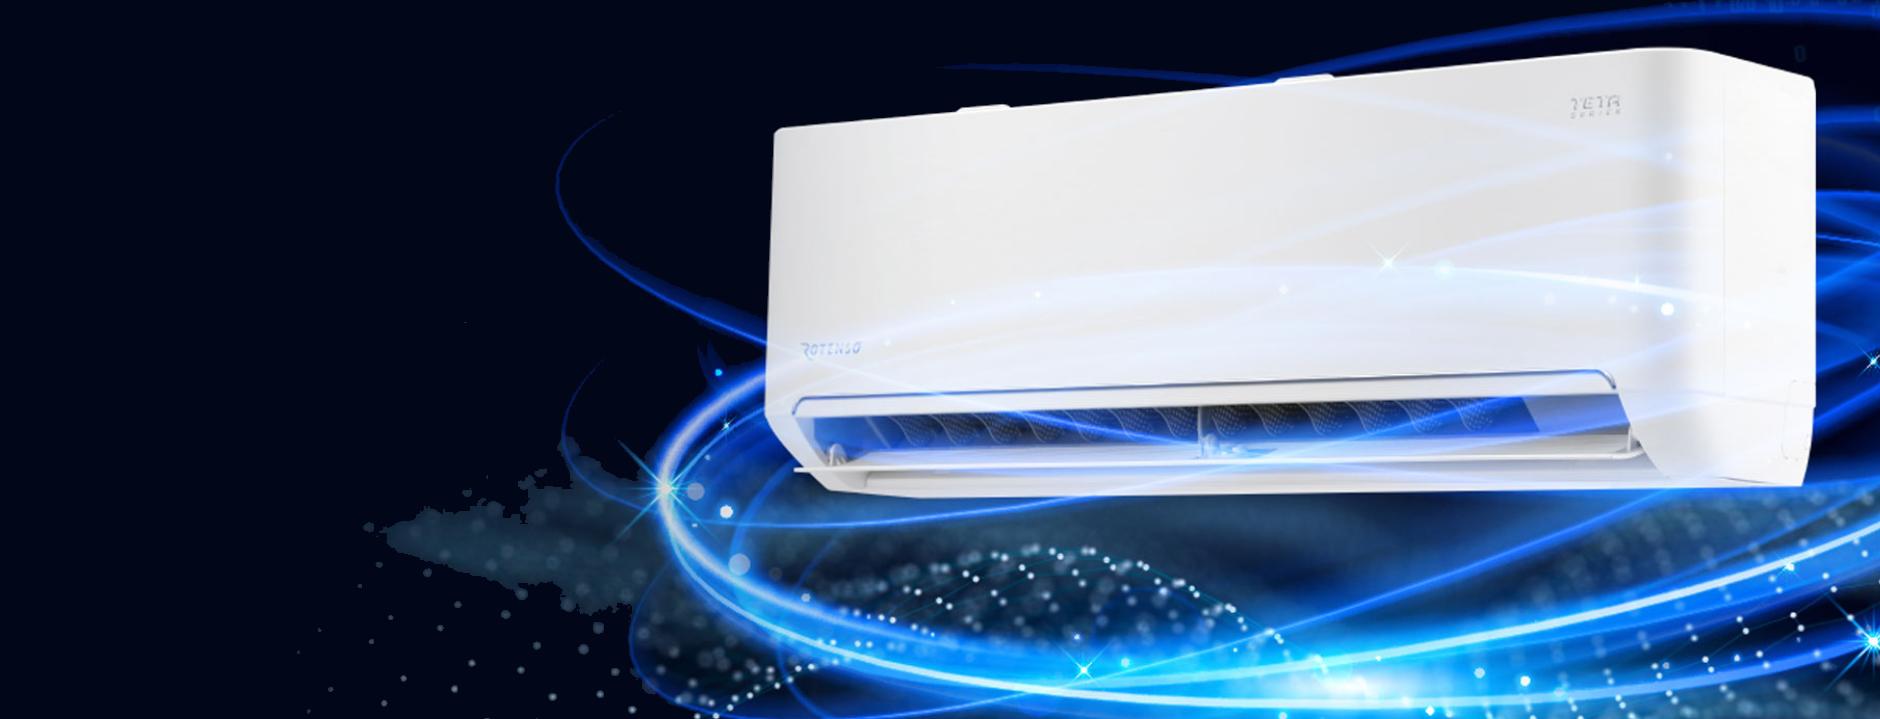 Klimatyzacja Rotenso Teta TA50X 5,1kW Wi-Fi 4D - zdrowsze i czystsze powietrze dzięki lampie LED UV iAIR